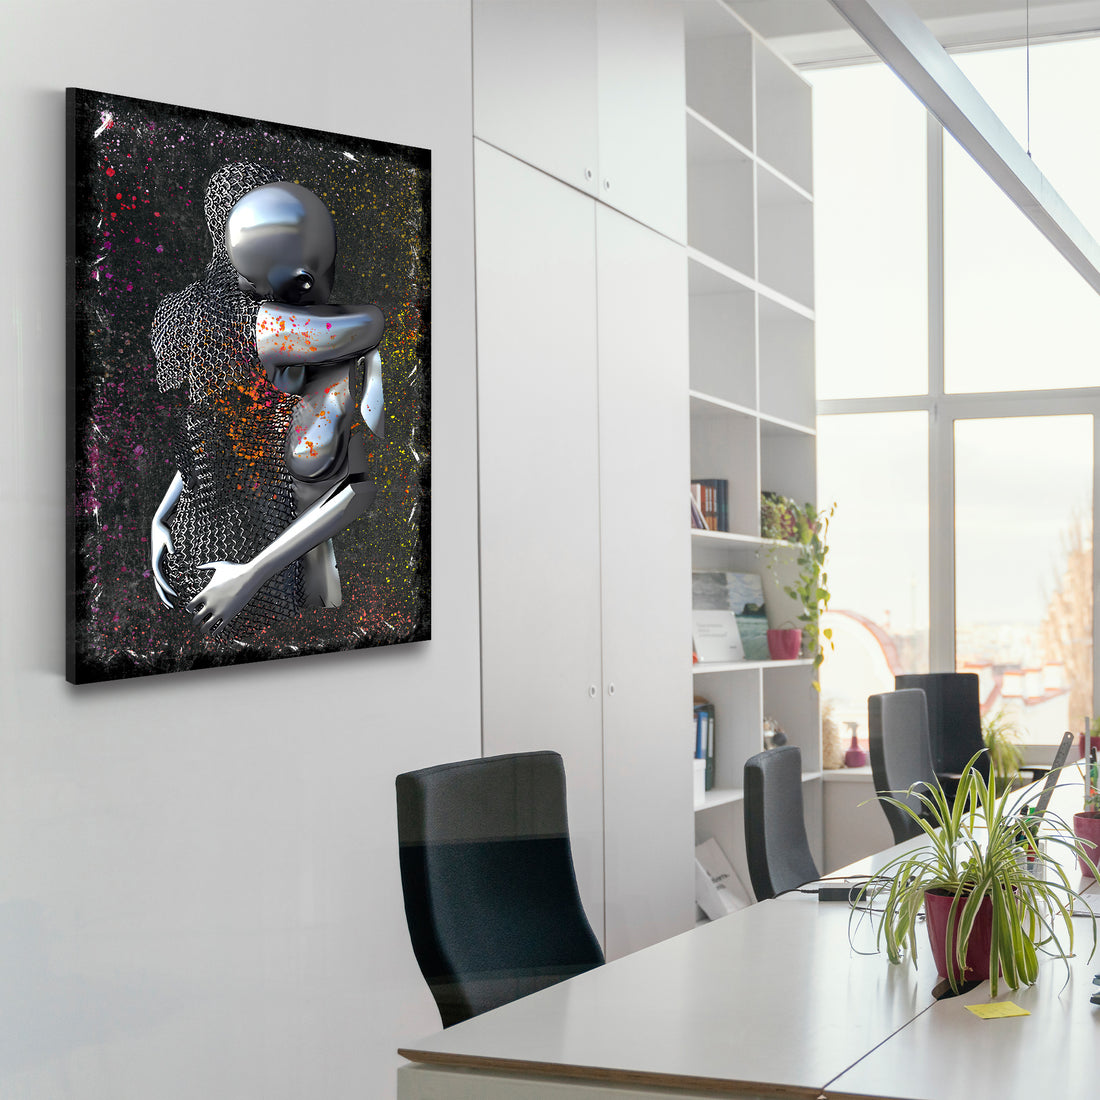 Wandbild Abstract 3D Metallfiguren Metallic Love Kunst Körper Colour